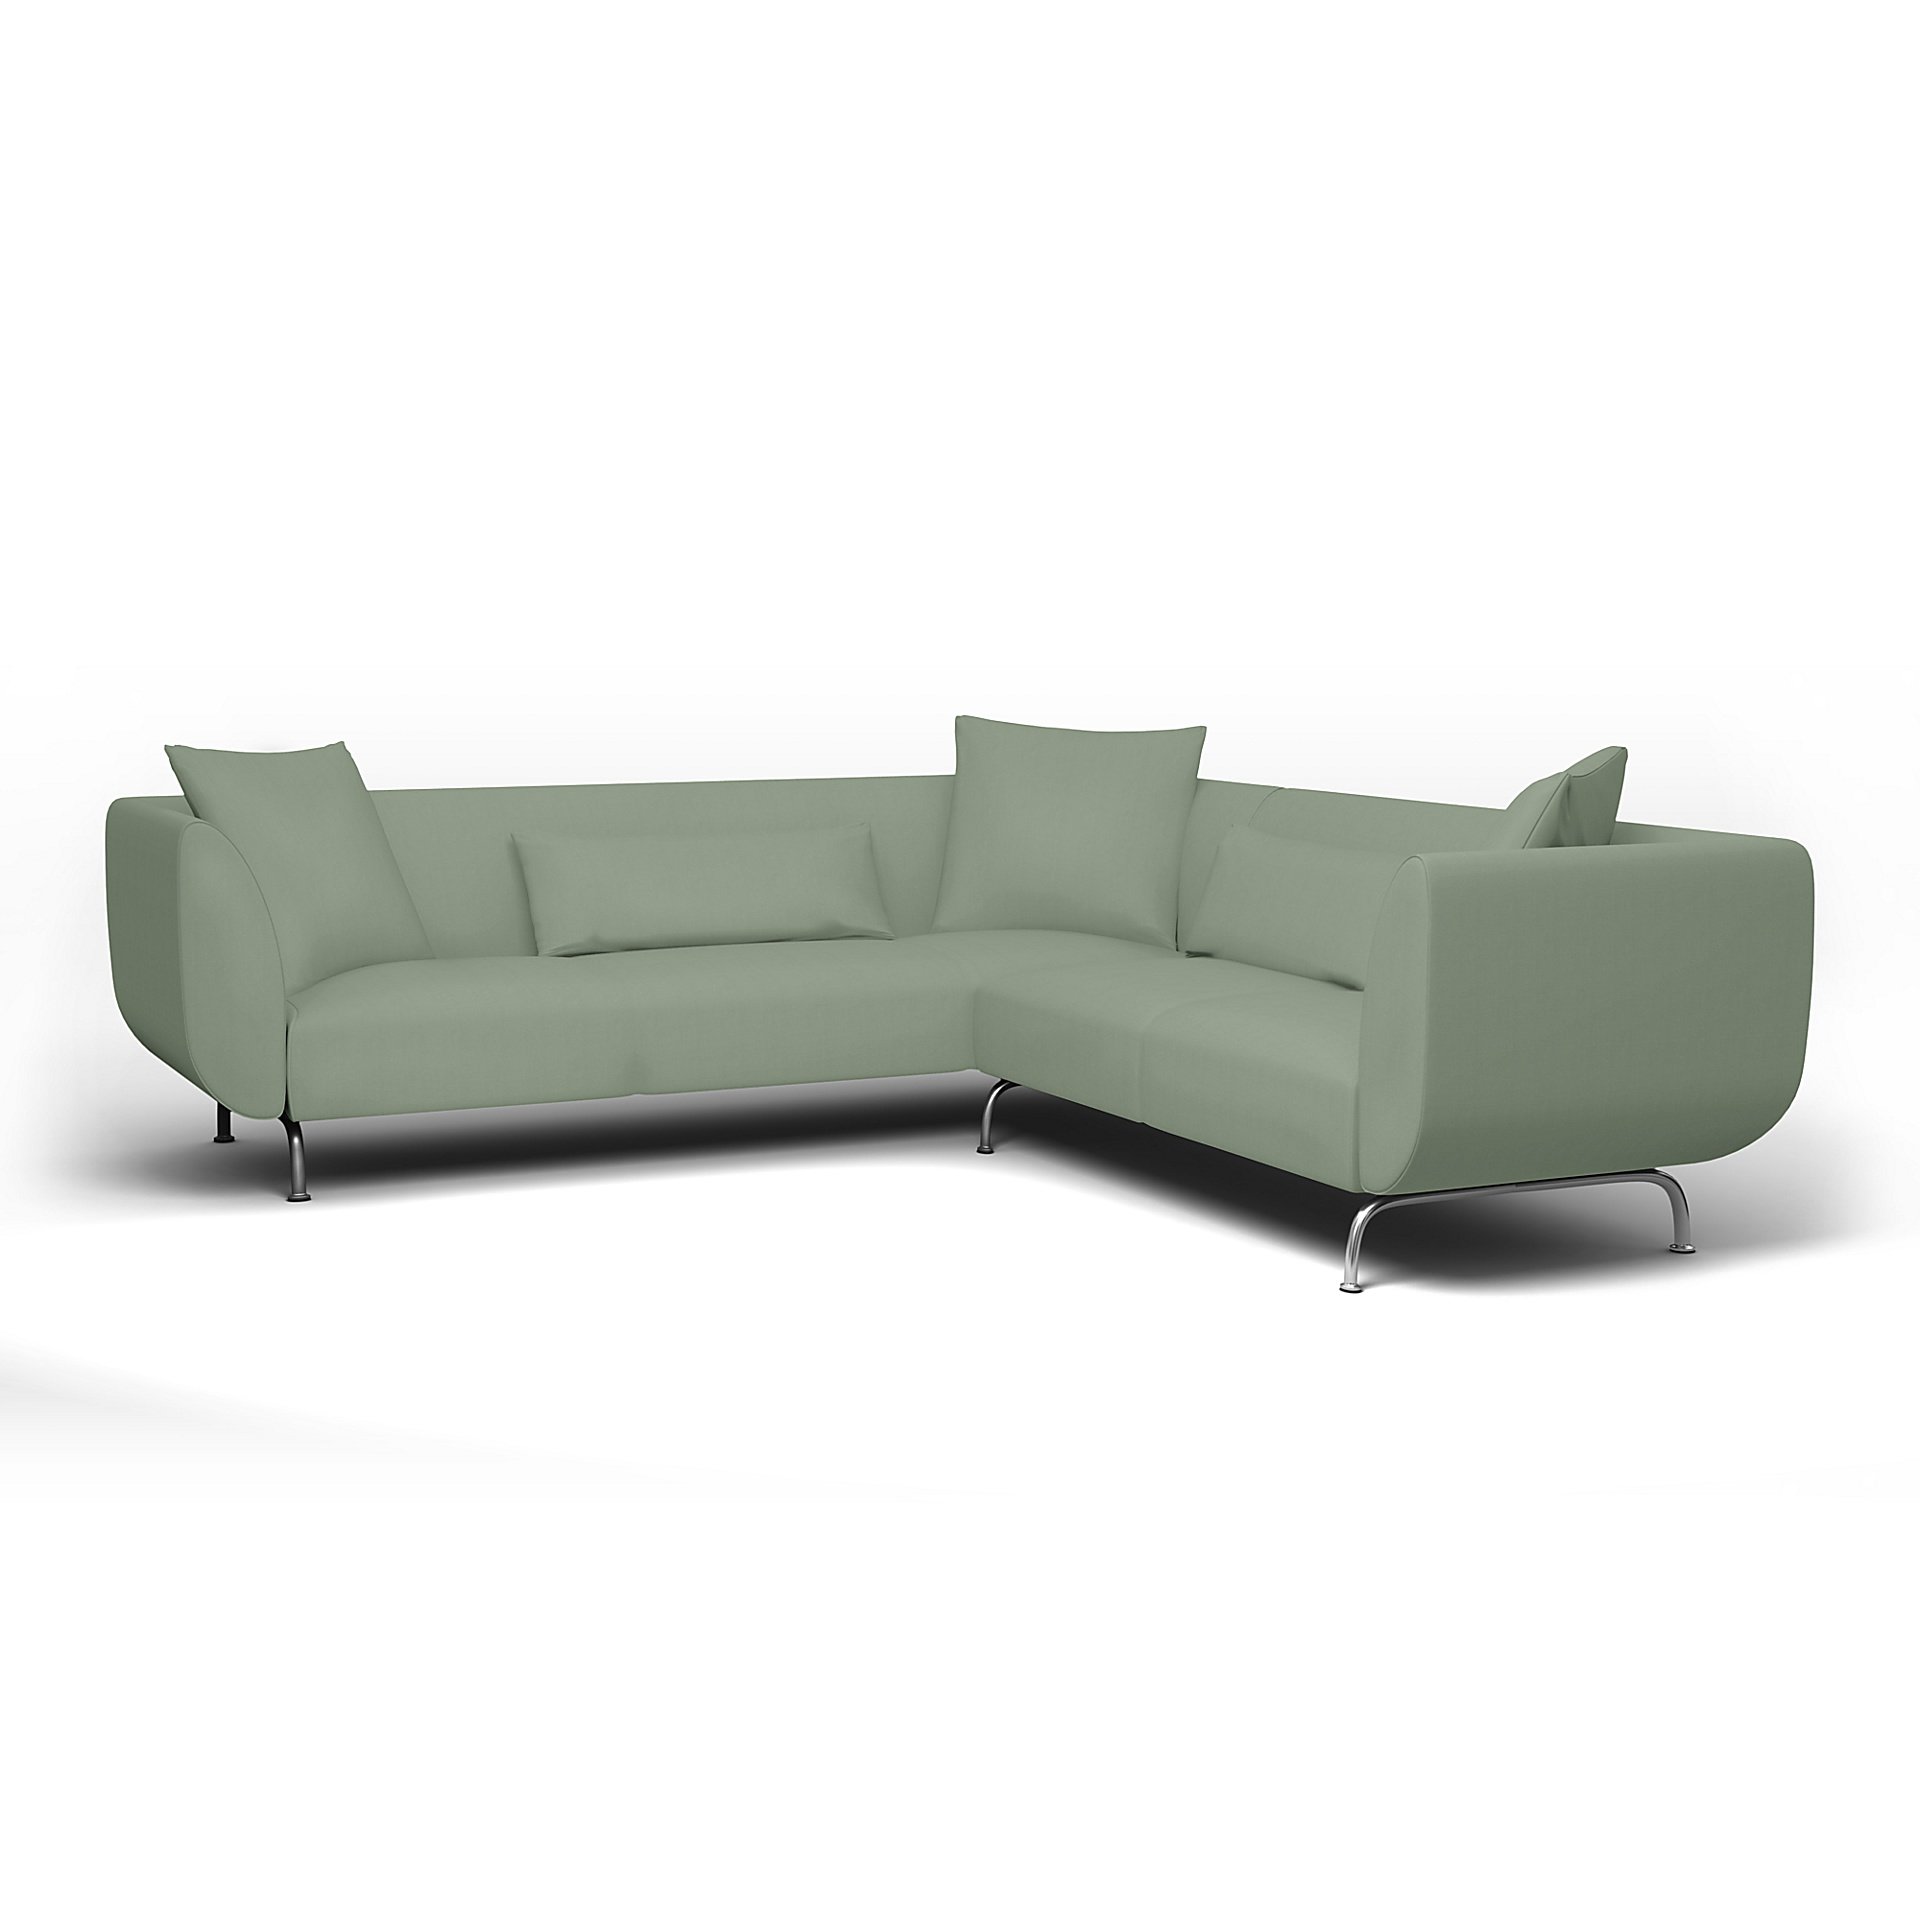 IKEA - Stromstad Corner Sofa Cover, Seagrass, Cotton - Bemz